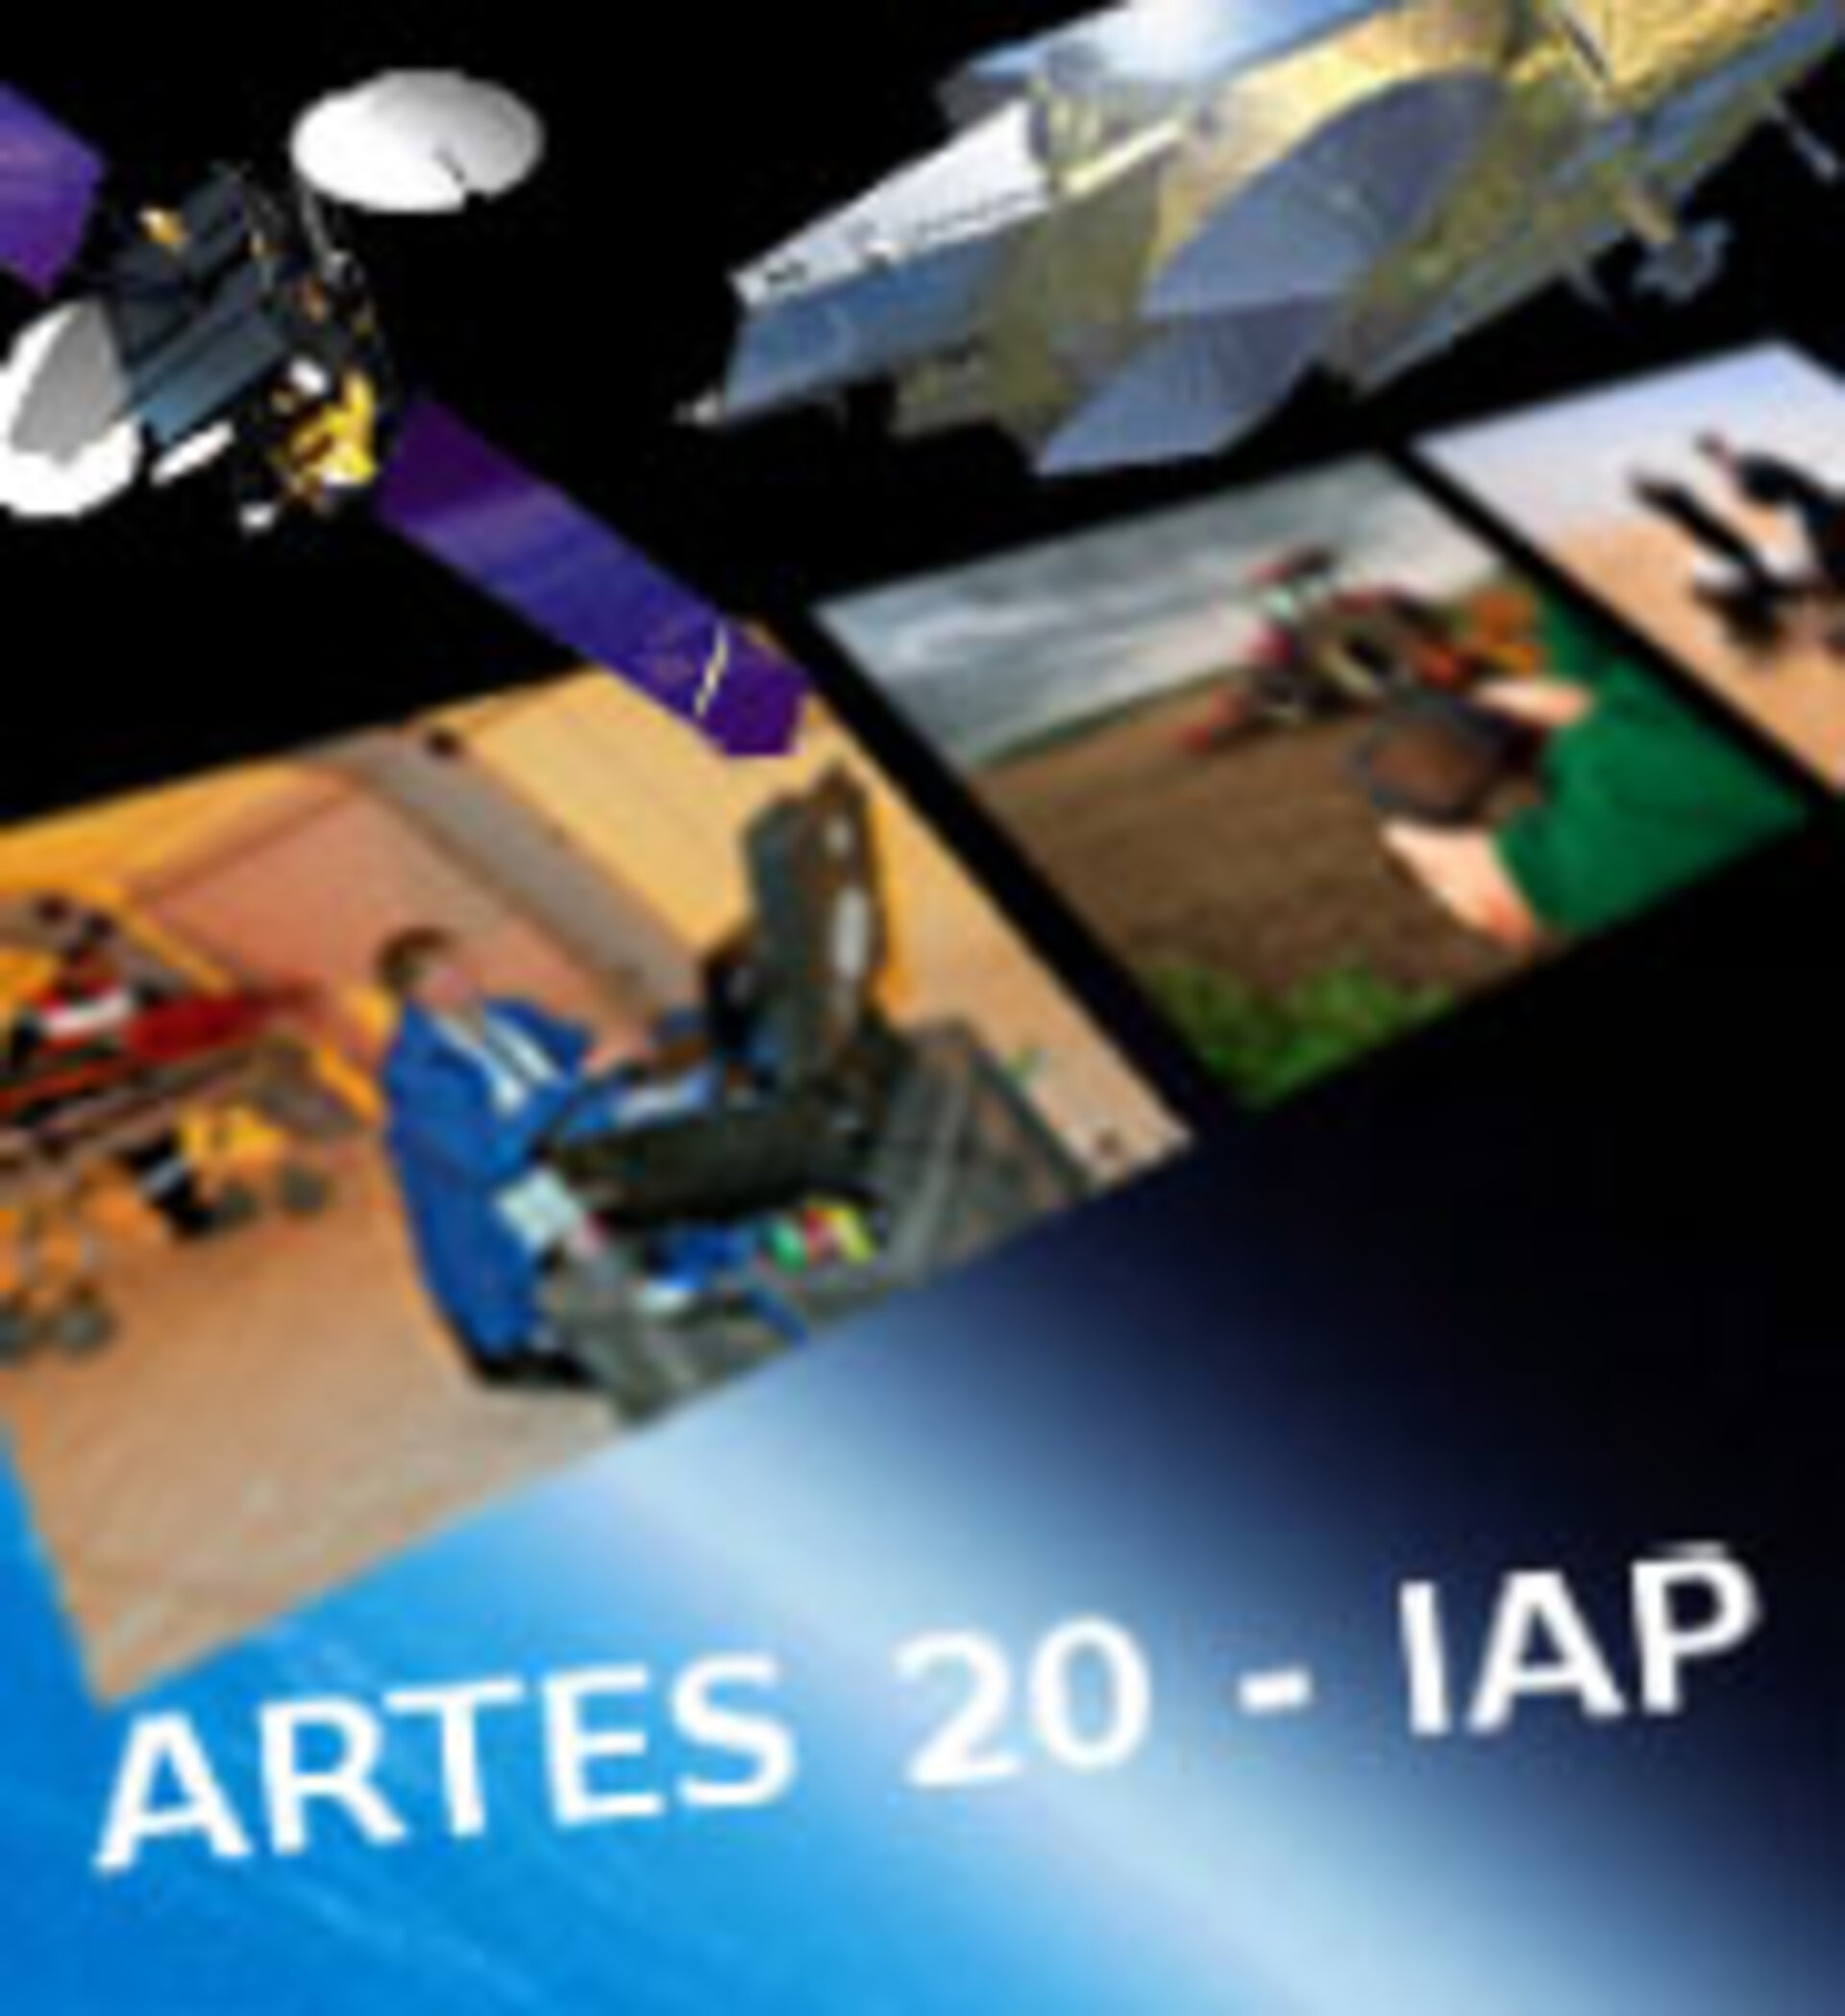 ARTES 20 IAP